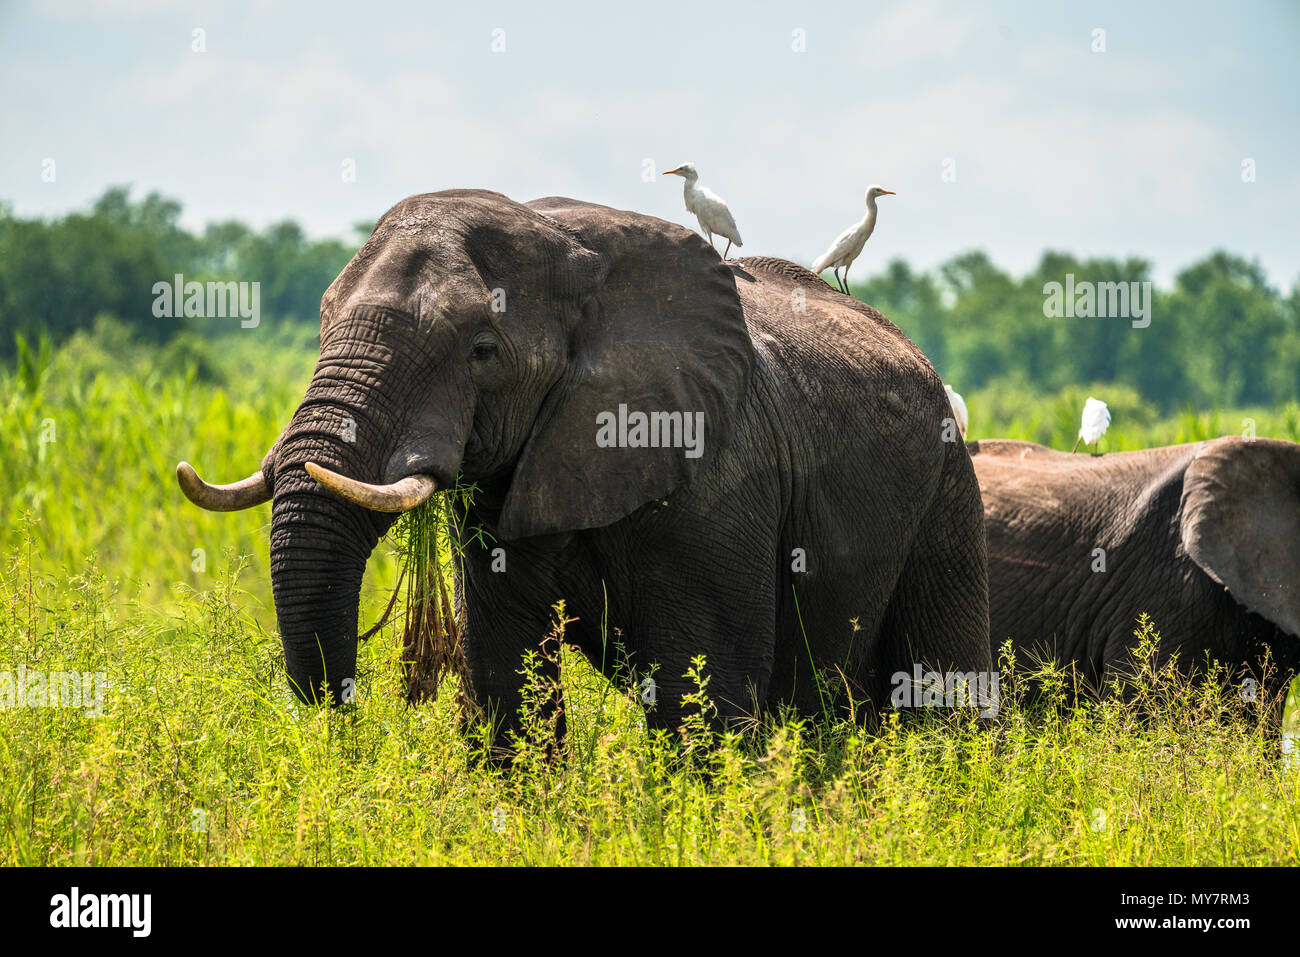 L'alimentation de l'éléphant sur l'herbe avec deux aigrettes blanches assis sur son dos. Banque D'Images